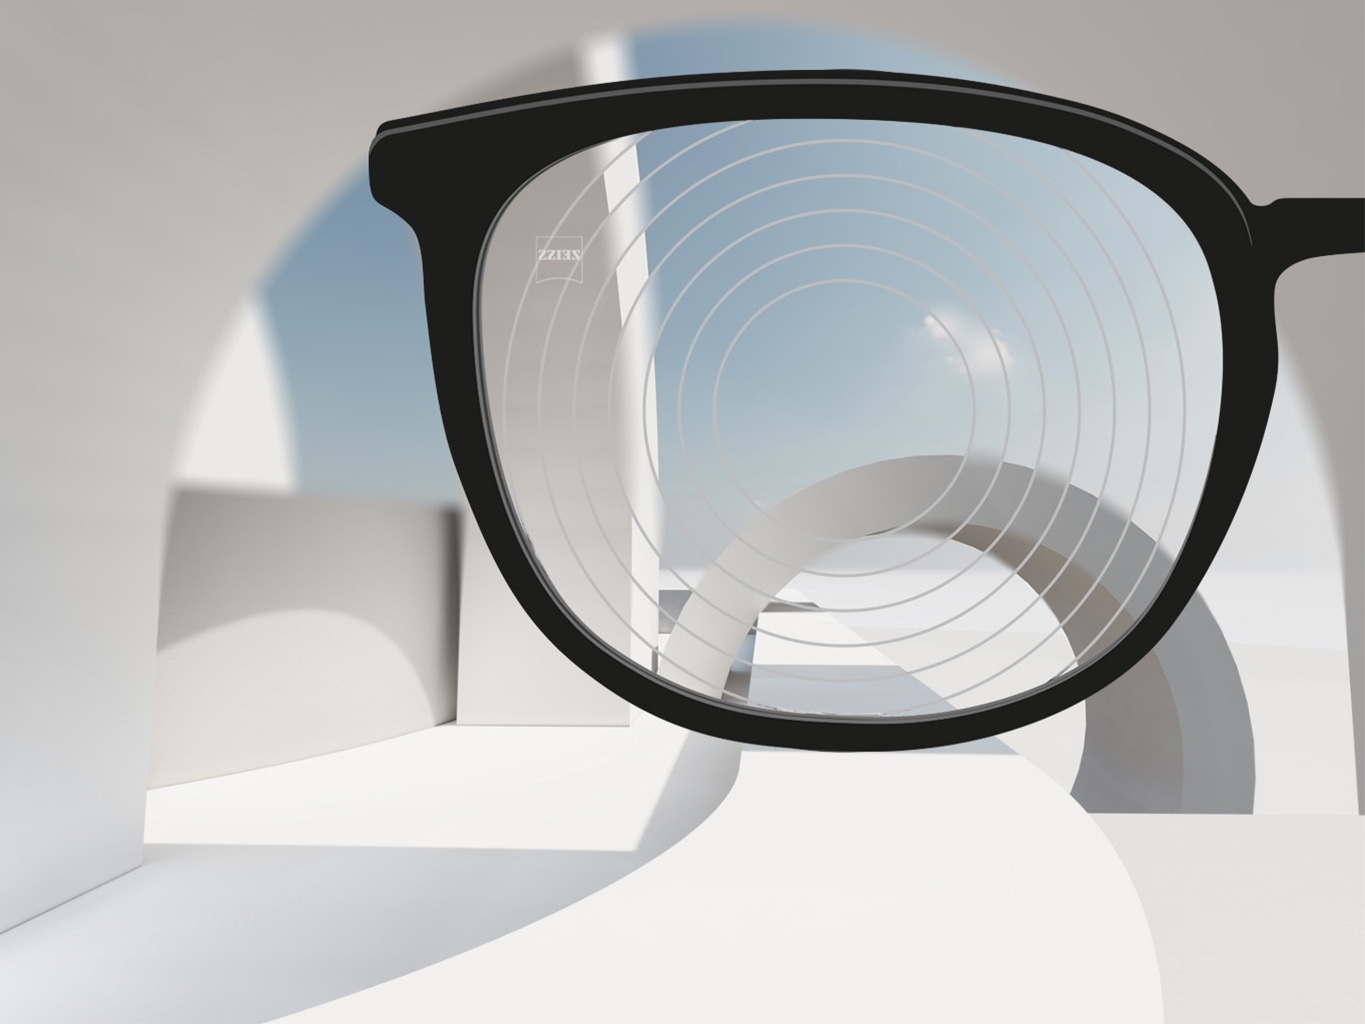 Imagen en primer plano de los lentes de control de la miopía de ZEISS, con montura de gafas negra y círculos concéntricos en la superficie del lente.